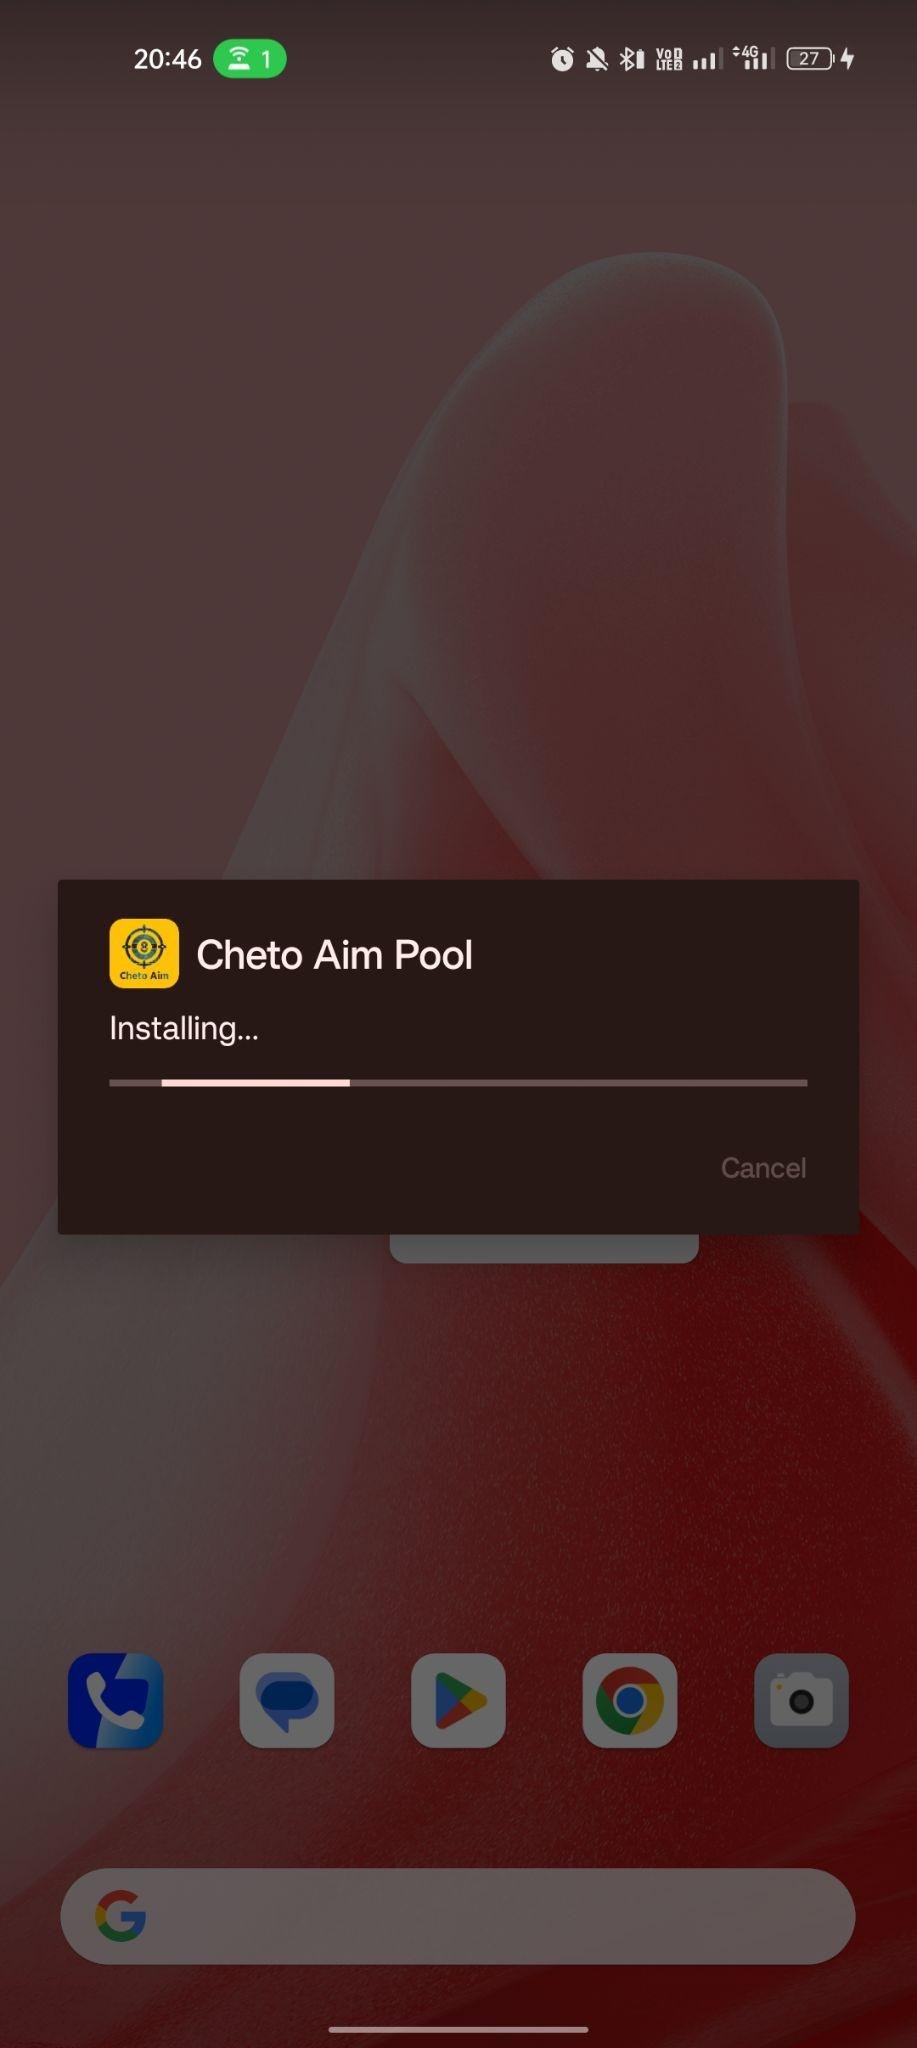 Cheto Aim Pool - Guidelines 8BP apk installing